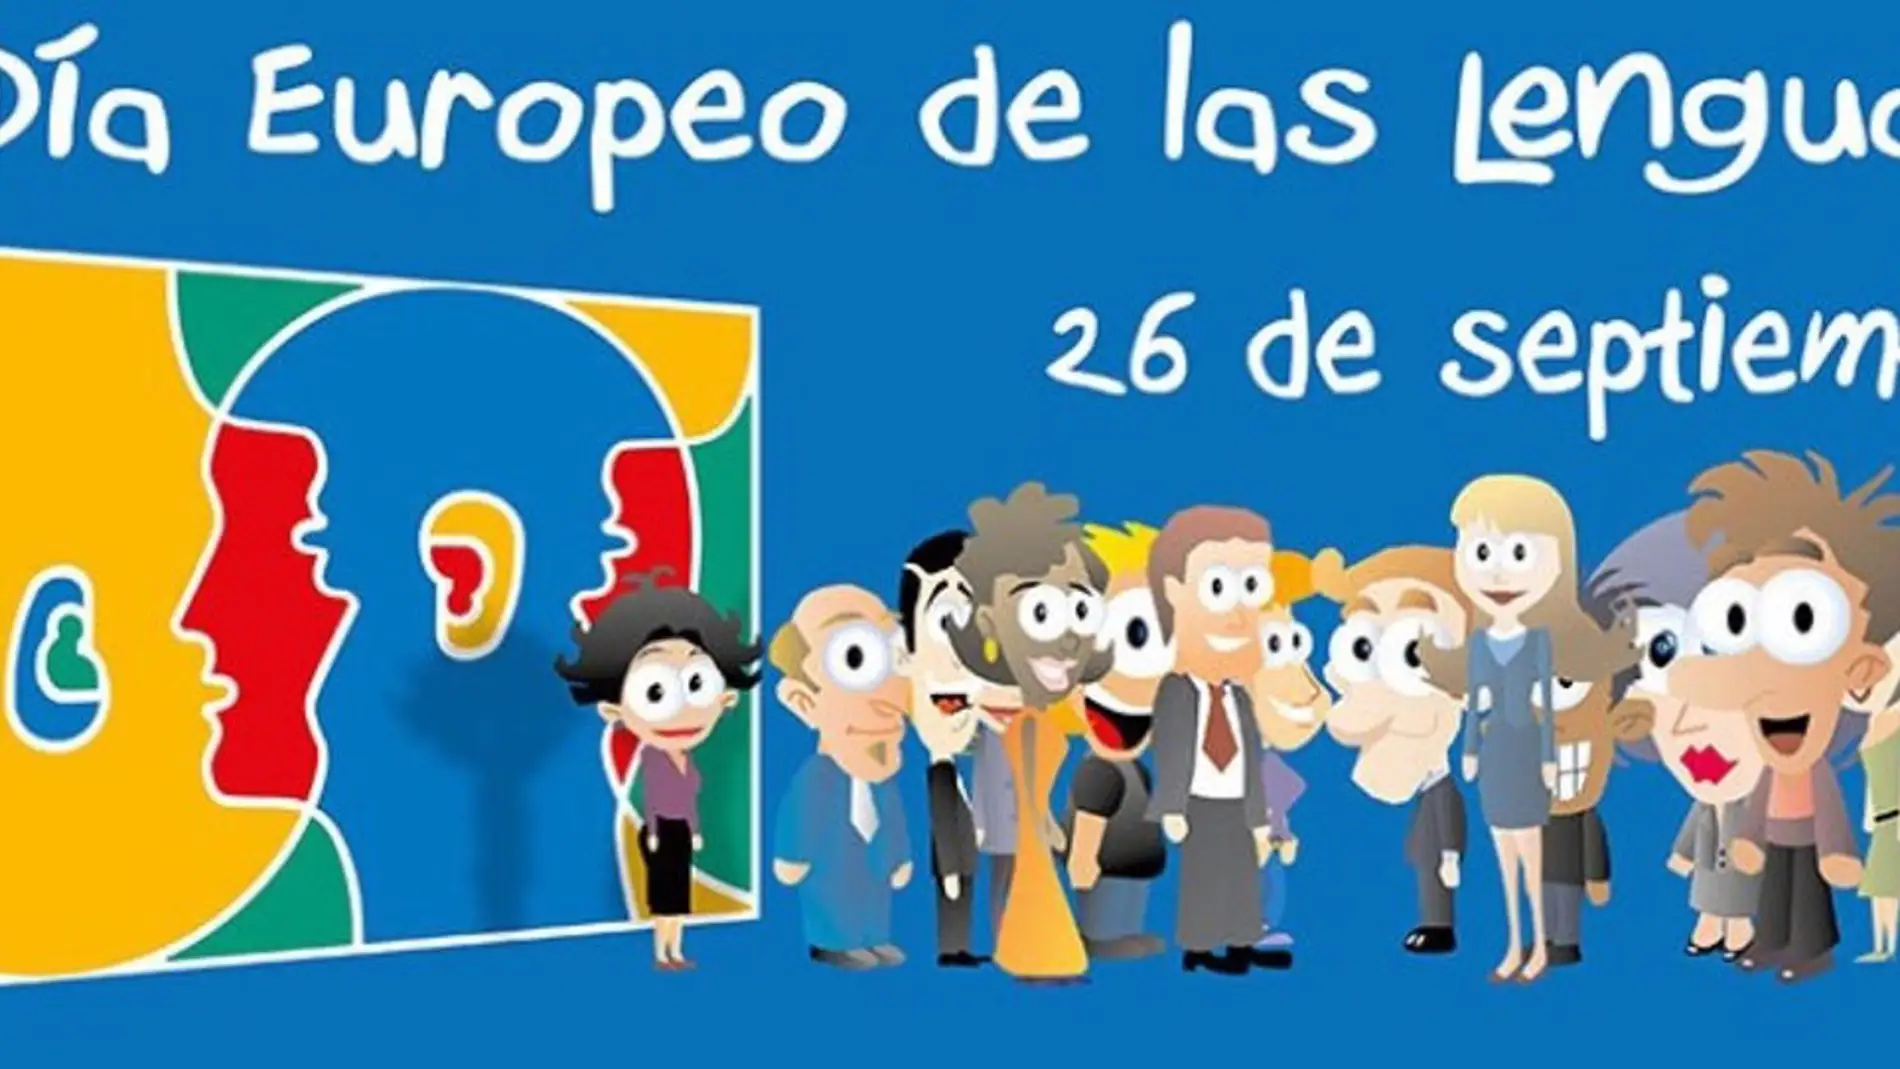 La Junta anima a los centros educativos a participar del Día Europeo de las Lenguas el día 26 en el CEIP Castra Caecilia de Cáceres